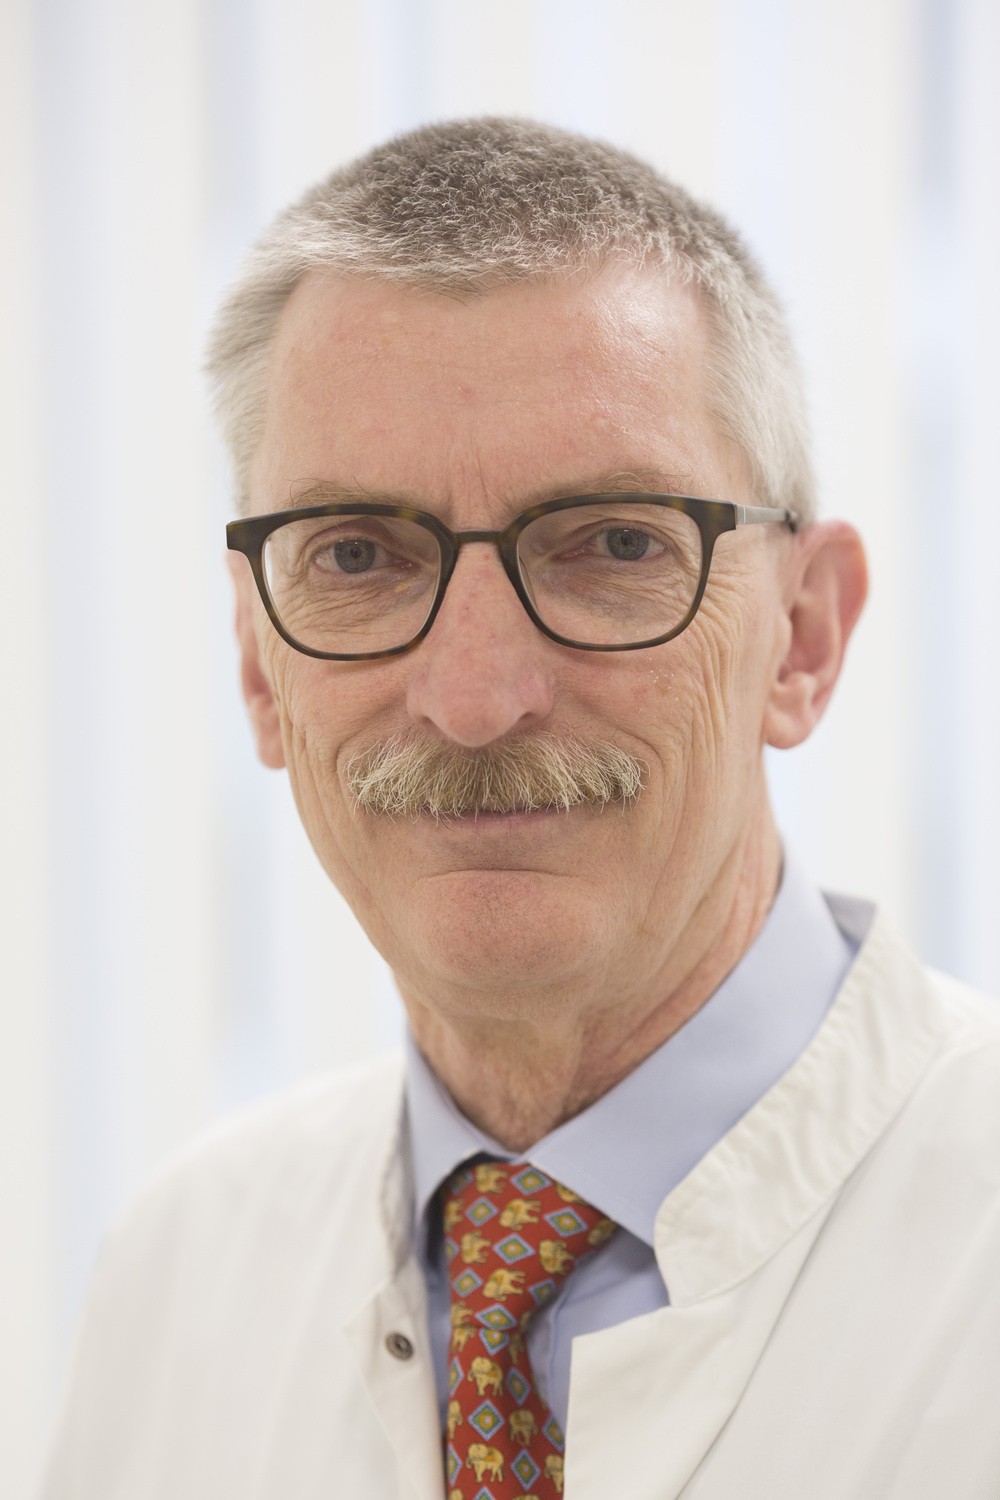 Prof. Christoph Baerwald, Leiter des Bereichs Rheumatologie am UKL, referiert bei der nächsten Veranstaltung der Reihe "Medizin für Jedermann".